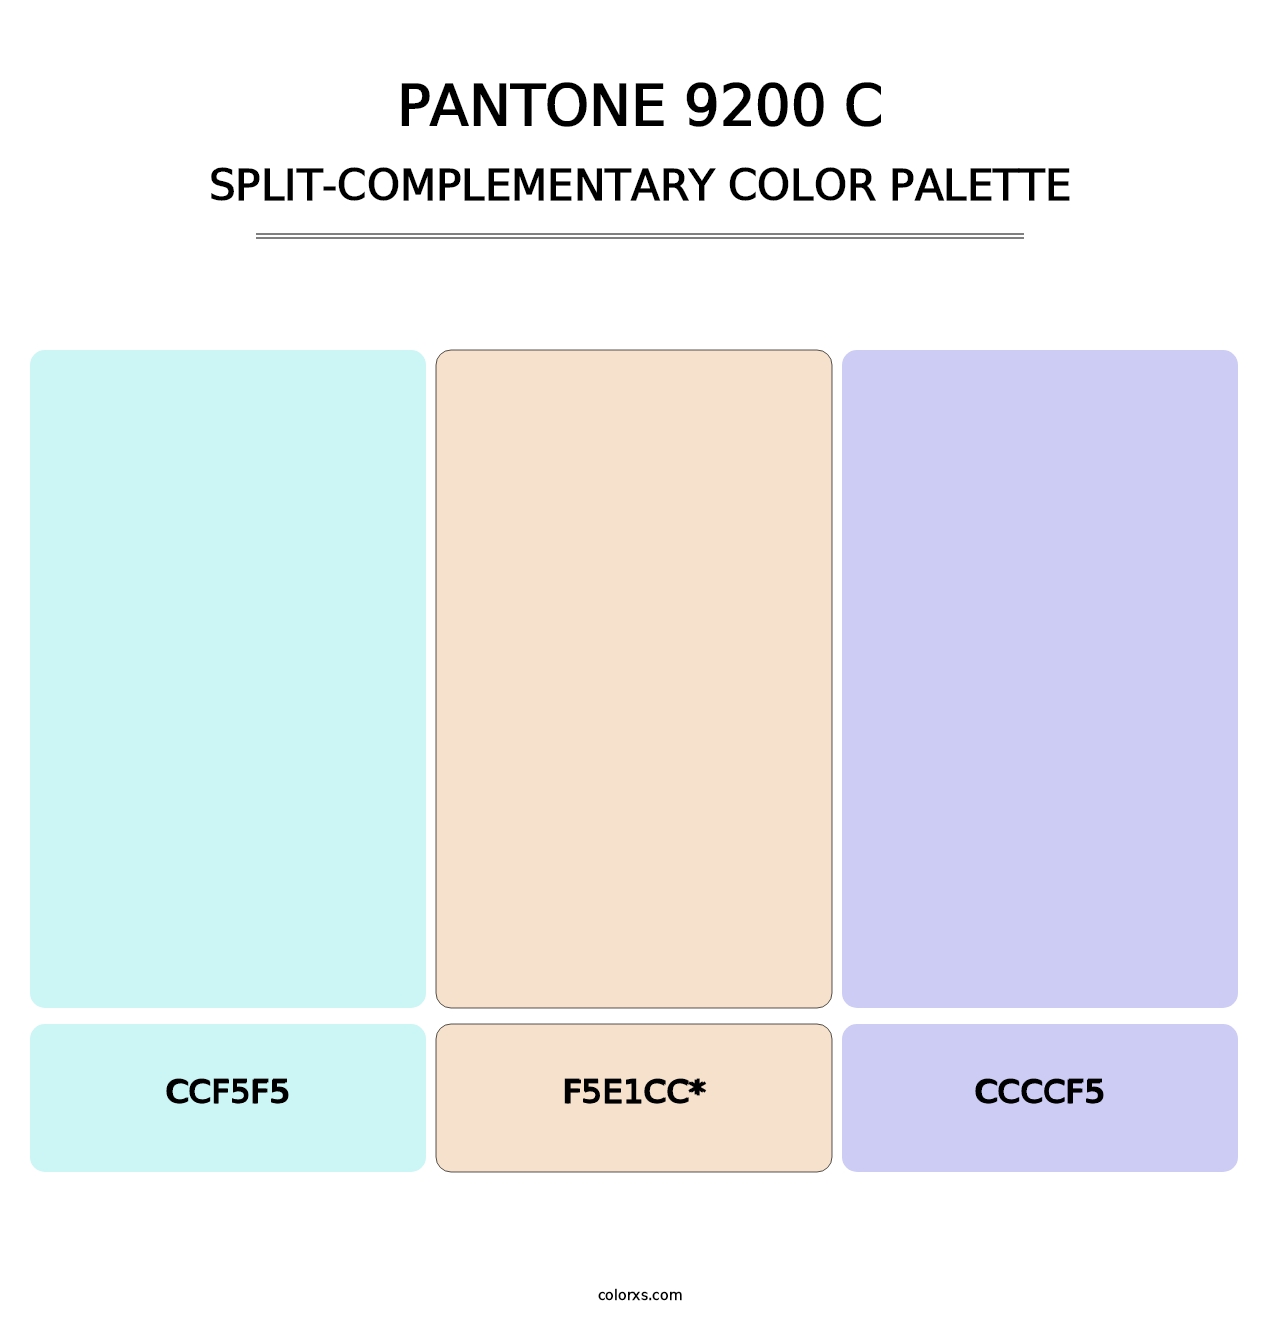 PANTONE 9200 C - Split-Complementary Color Palette